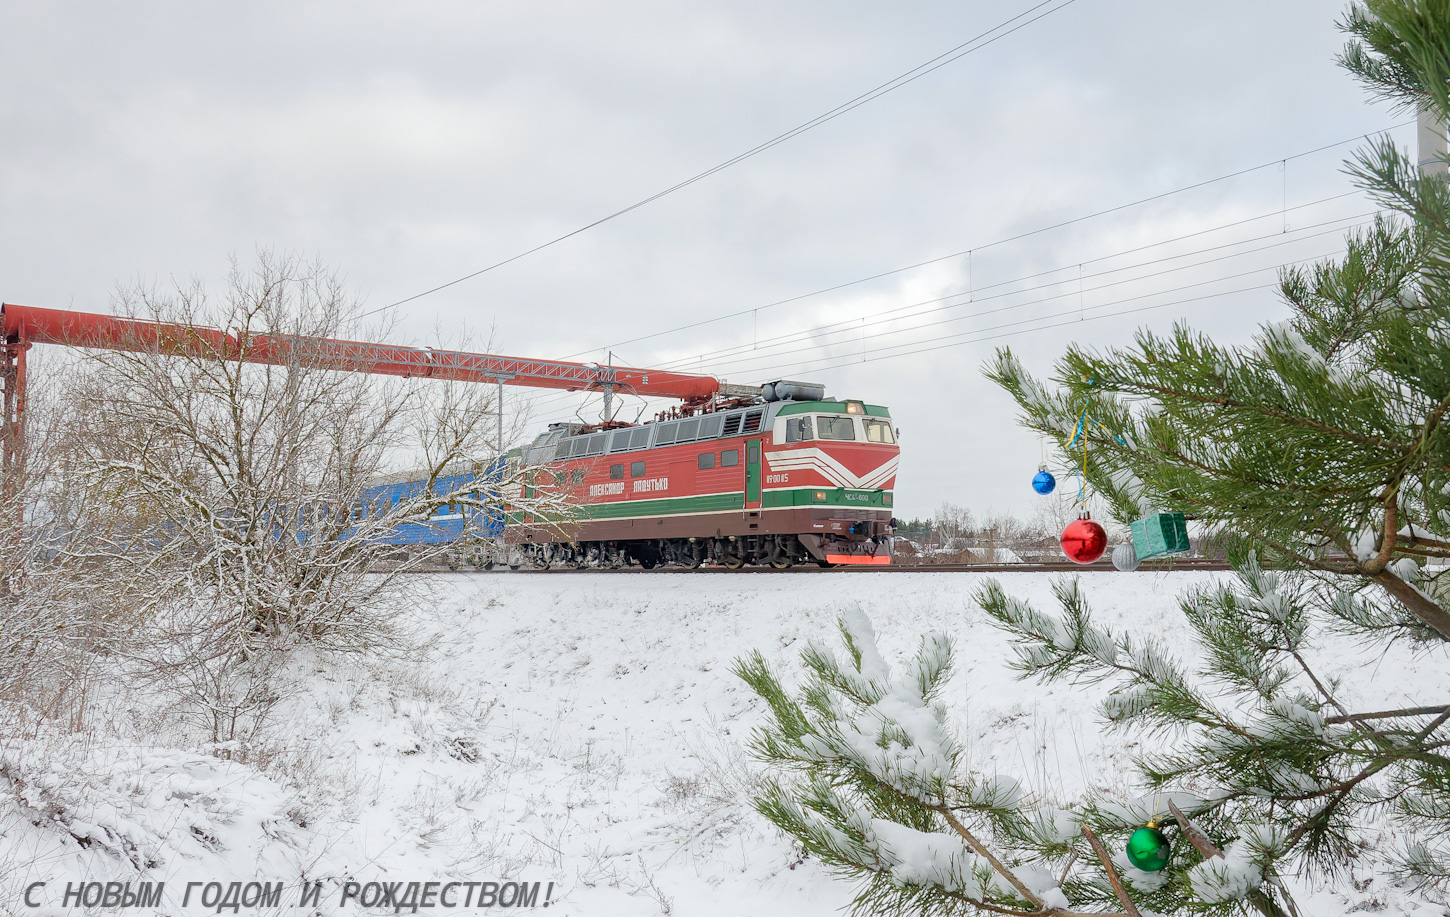 ЧС4Т-600; Фотозарисовки (Белорусская железная дорога)